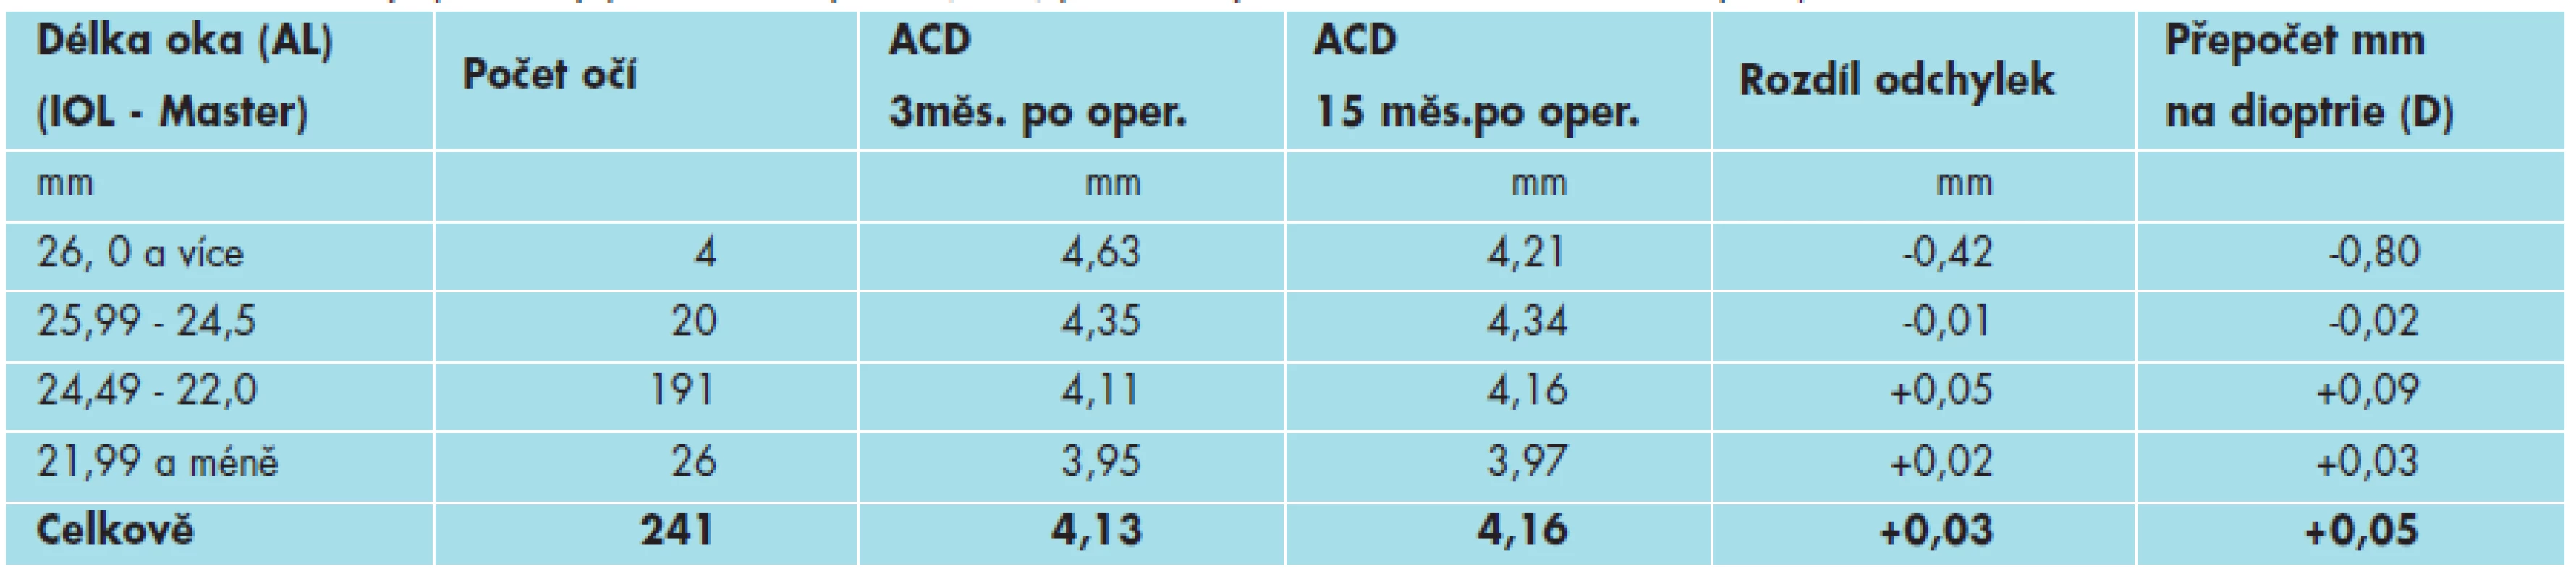 Průměrné odchylky hloubky přední komory oční (ACD) podle délky oka 3 měsíce a 15 měsíců po operaci